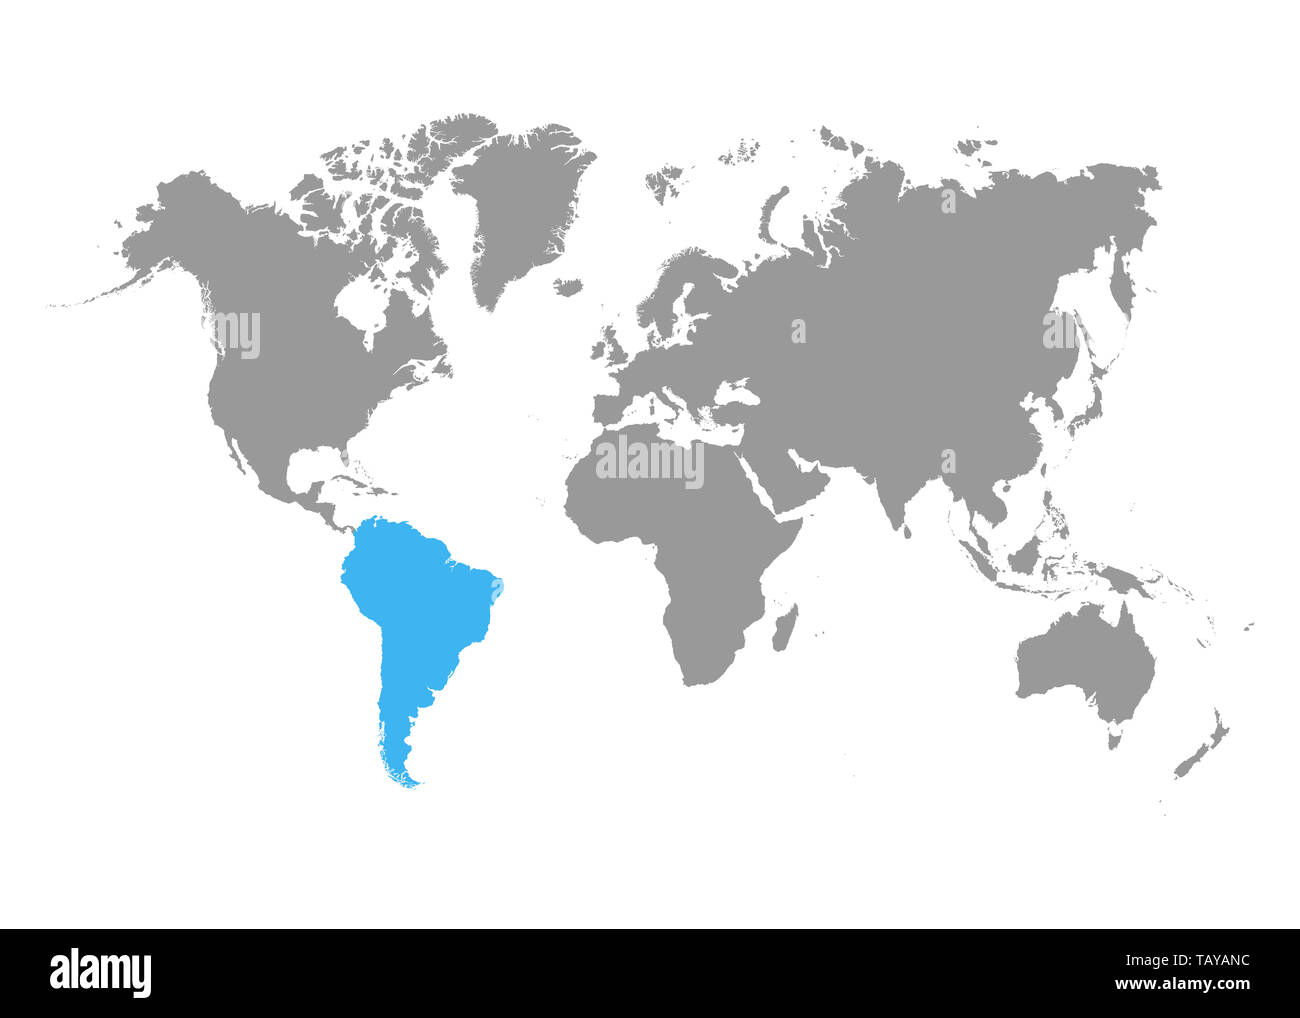 La mappa di Sud America è evidenziata in blu sulla mappa del mondo. Vettore Foto Stock